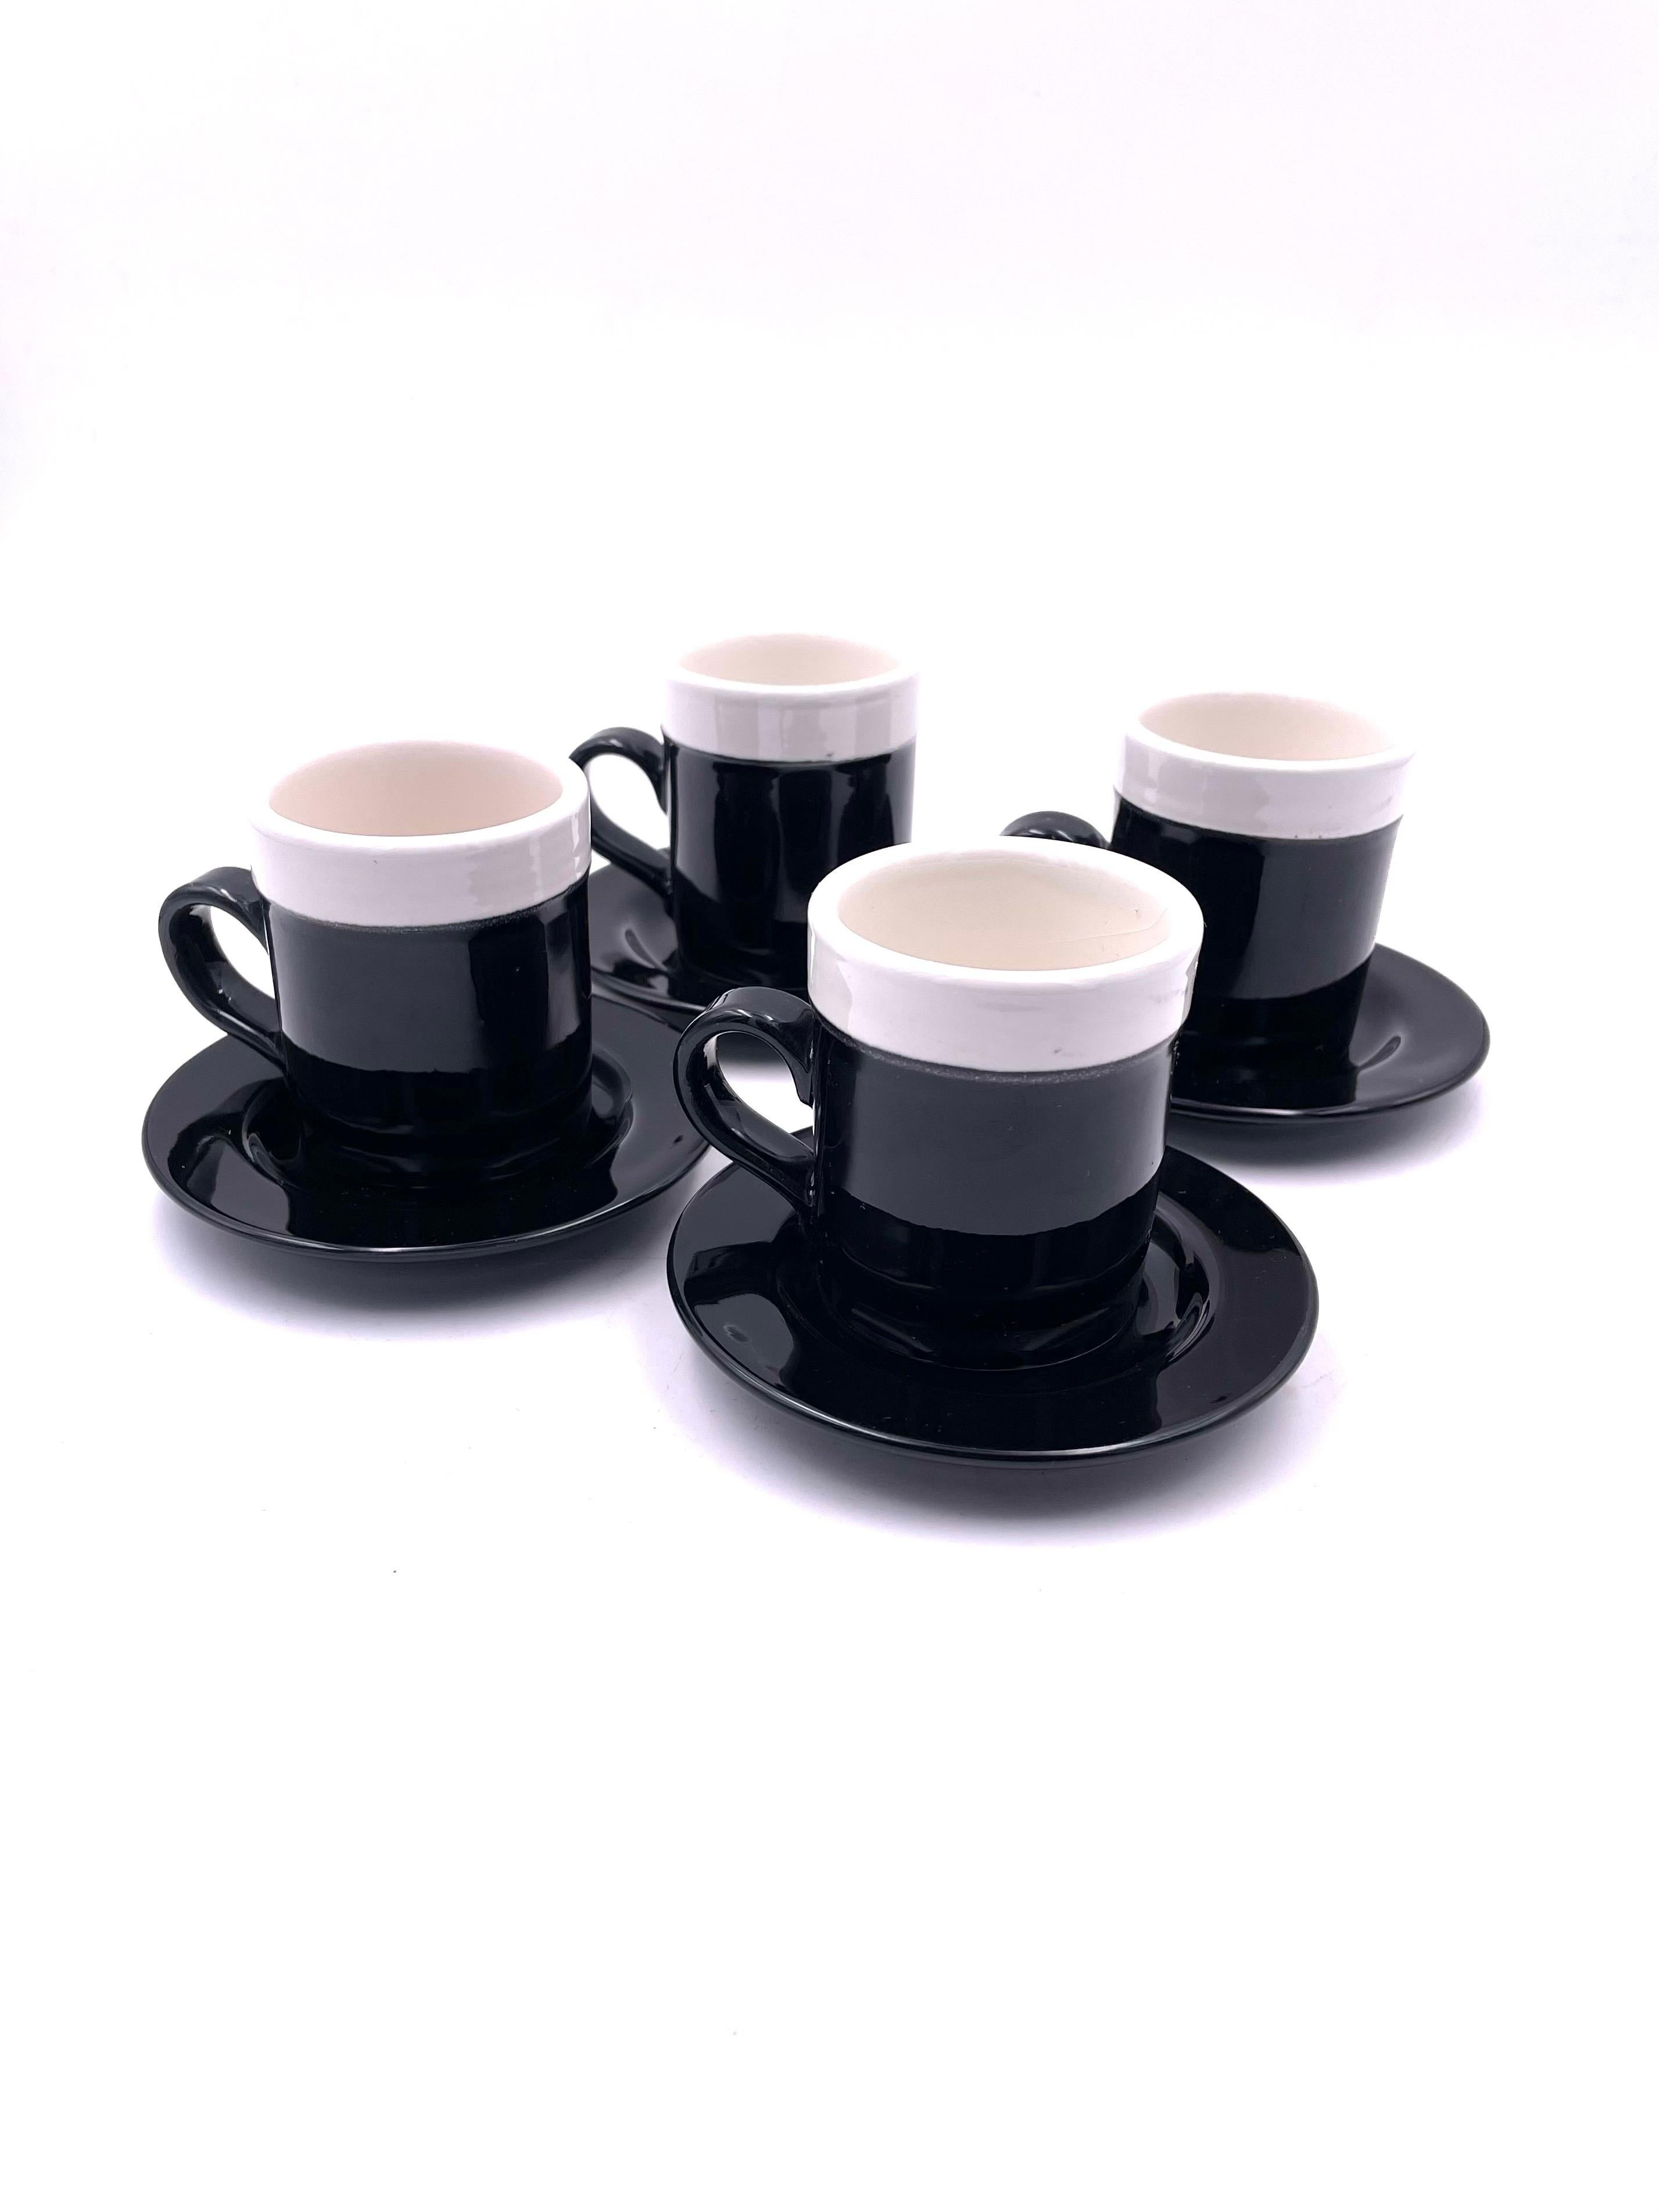 Un ensemble très rare de 4 tasses à espresso et soucoupes, les assiettes sont de 4